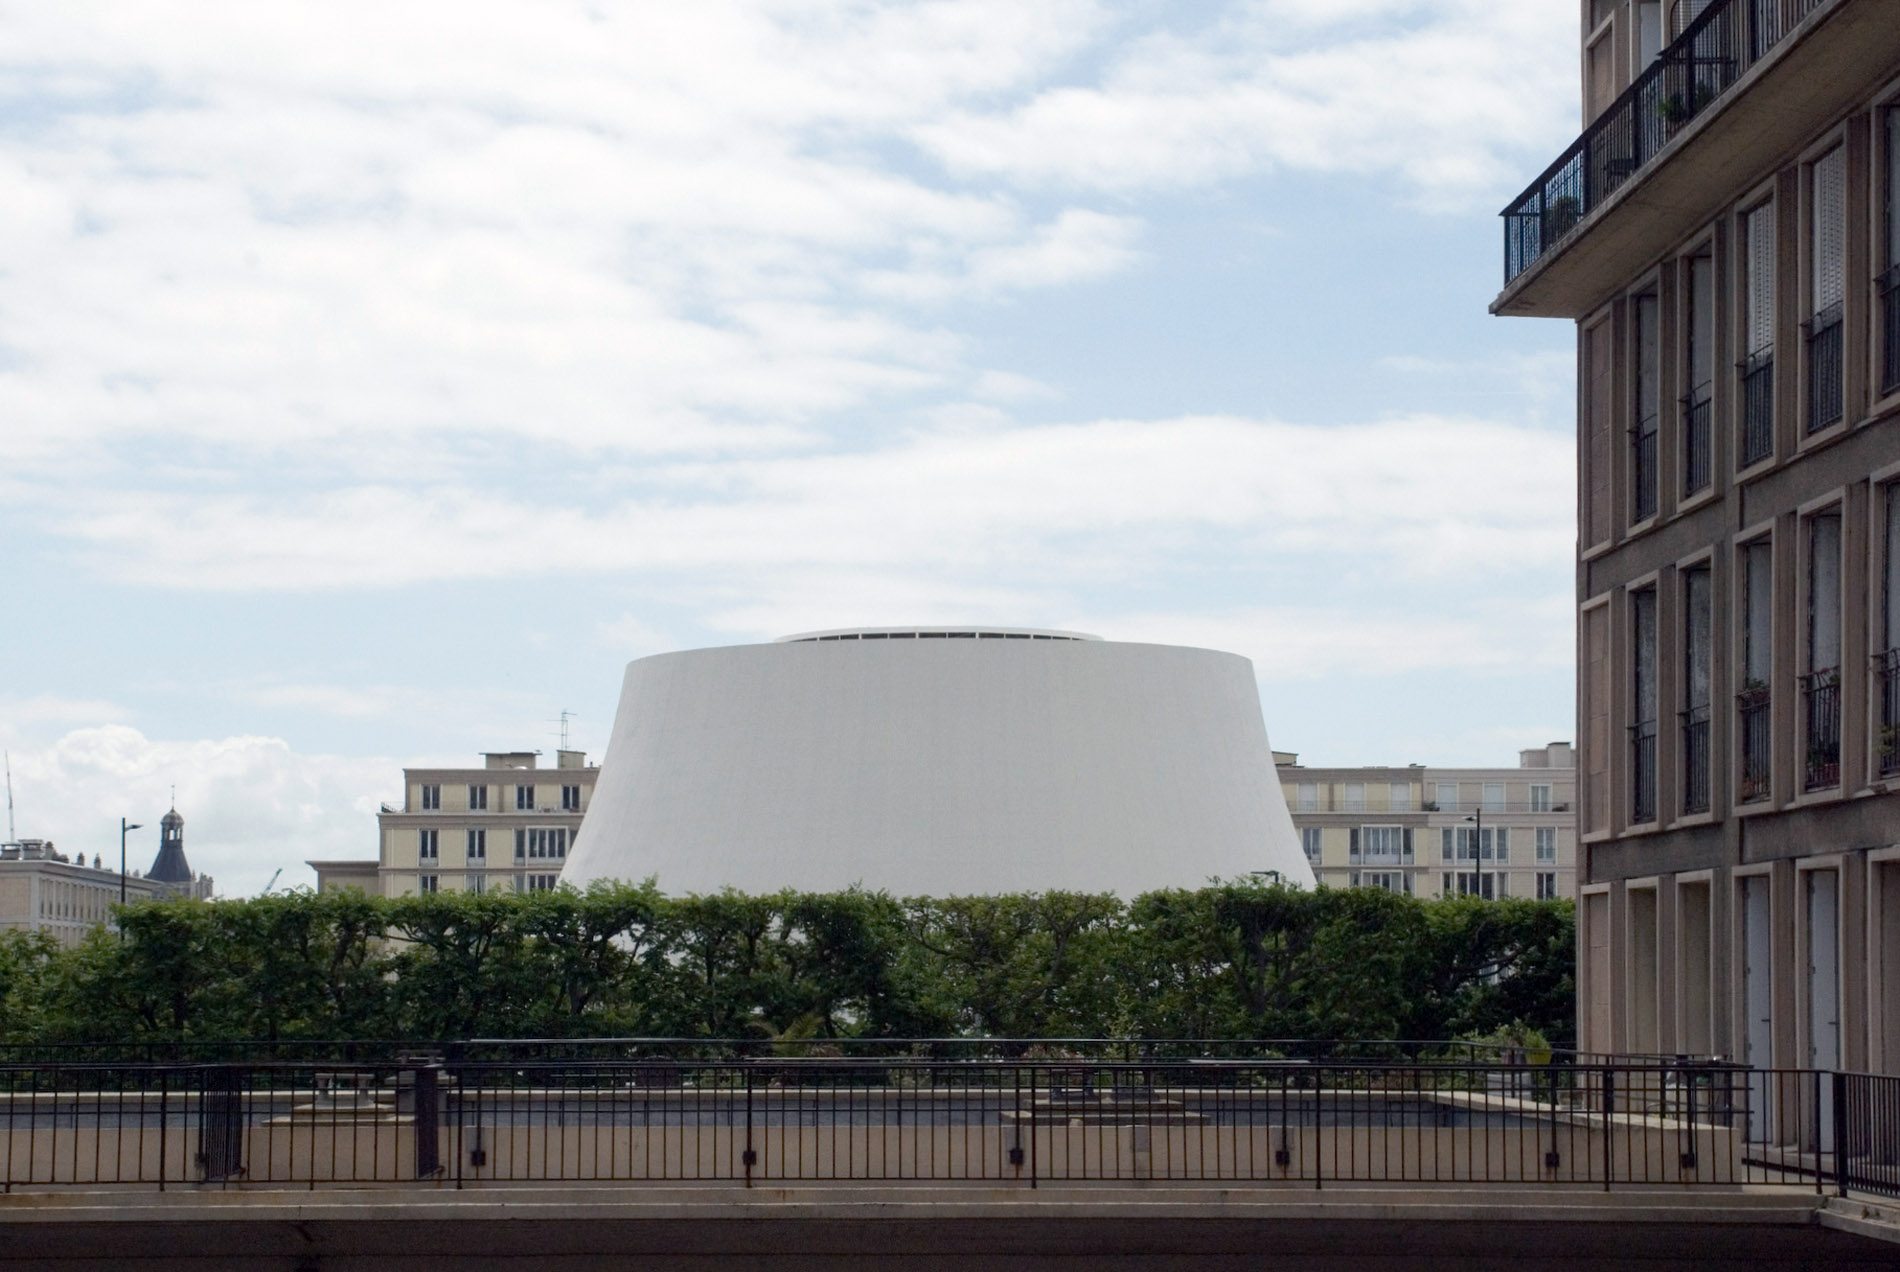 Le Volcan. 2014 wurde das Ensemble umfassend saniert. Seitdem befindet sich im "großen Vulkan" die Scène Nationale und eine Bar im Retro-Style. Es ist das größte Gebäude mit hyperbolischen Formen. Im "kleinen Vulkan" sind seit 2015 die Bibliothek und Mediathek von Le Havre beheimatet.